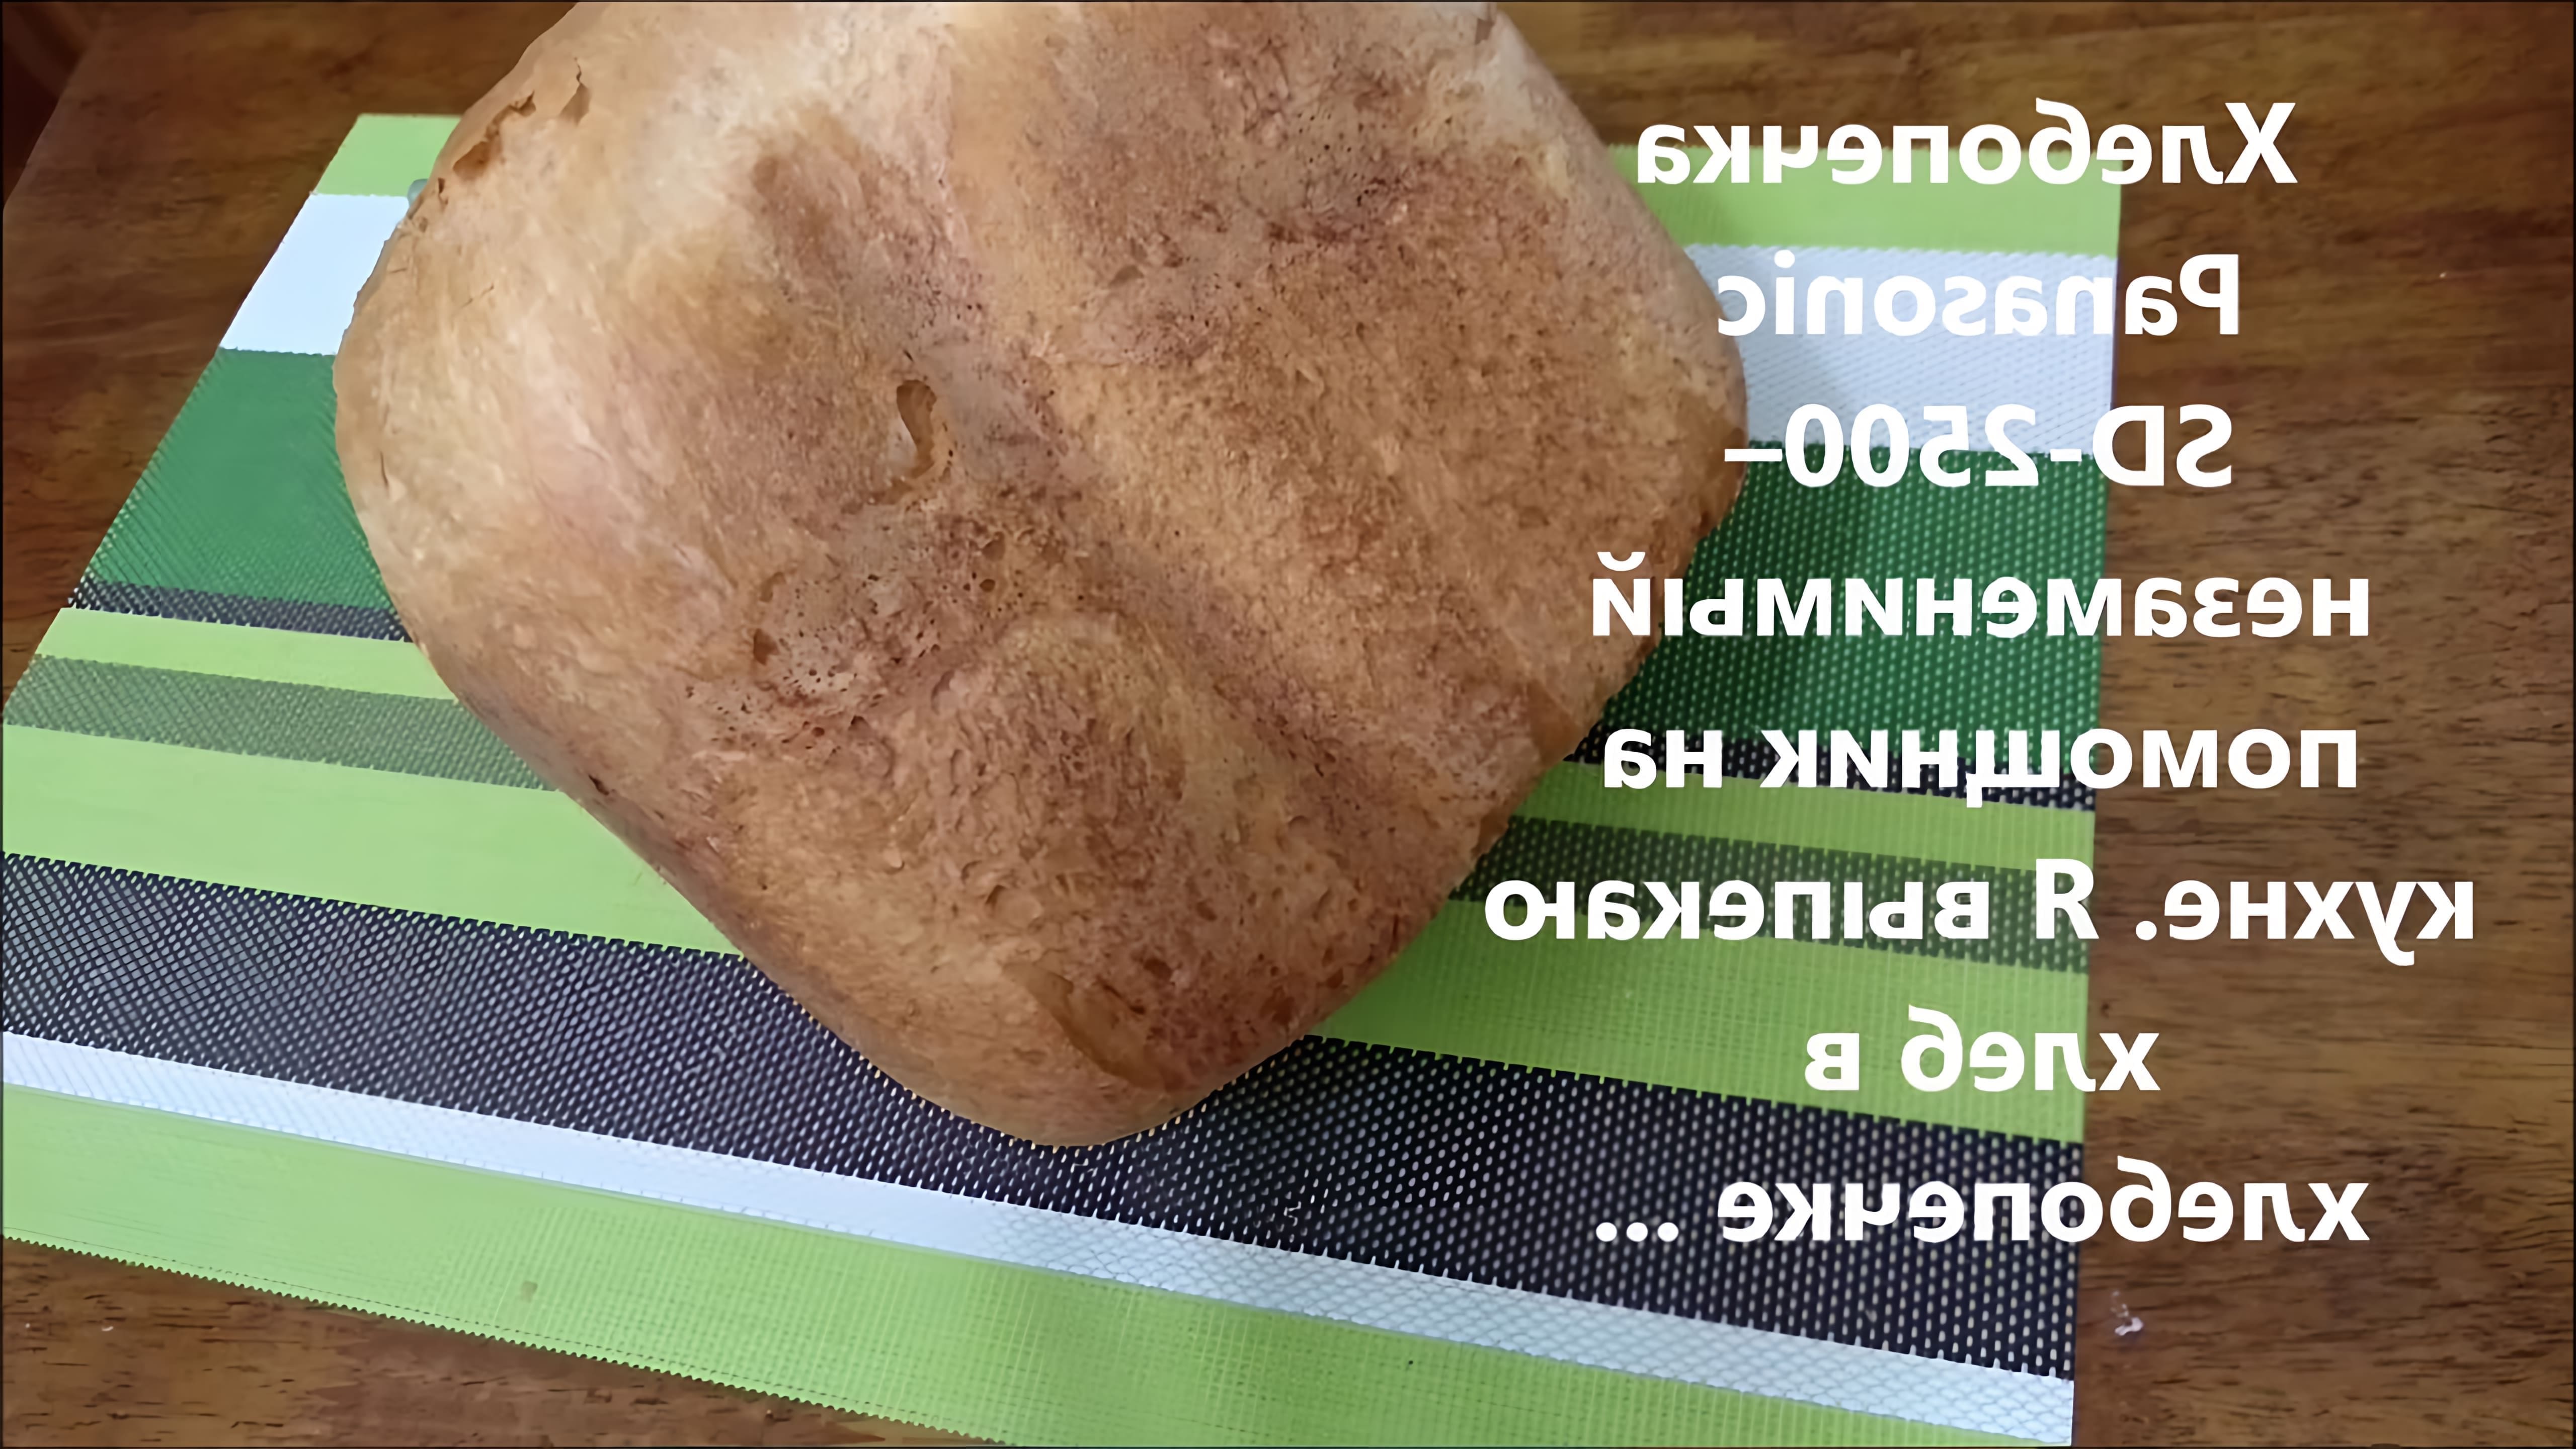 В этом видео-ролике будет показан рецепт приготовления вкусного хлеба в хлебопечке Панасоник - SD-2500